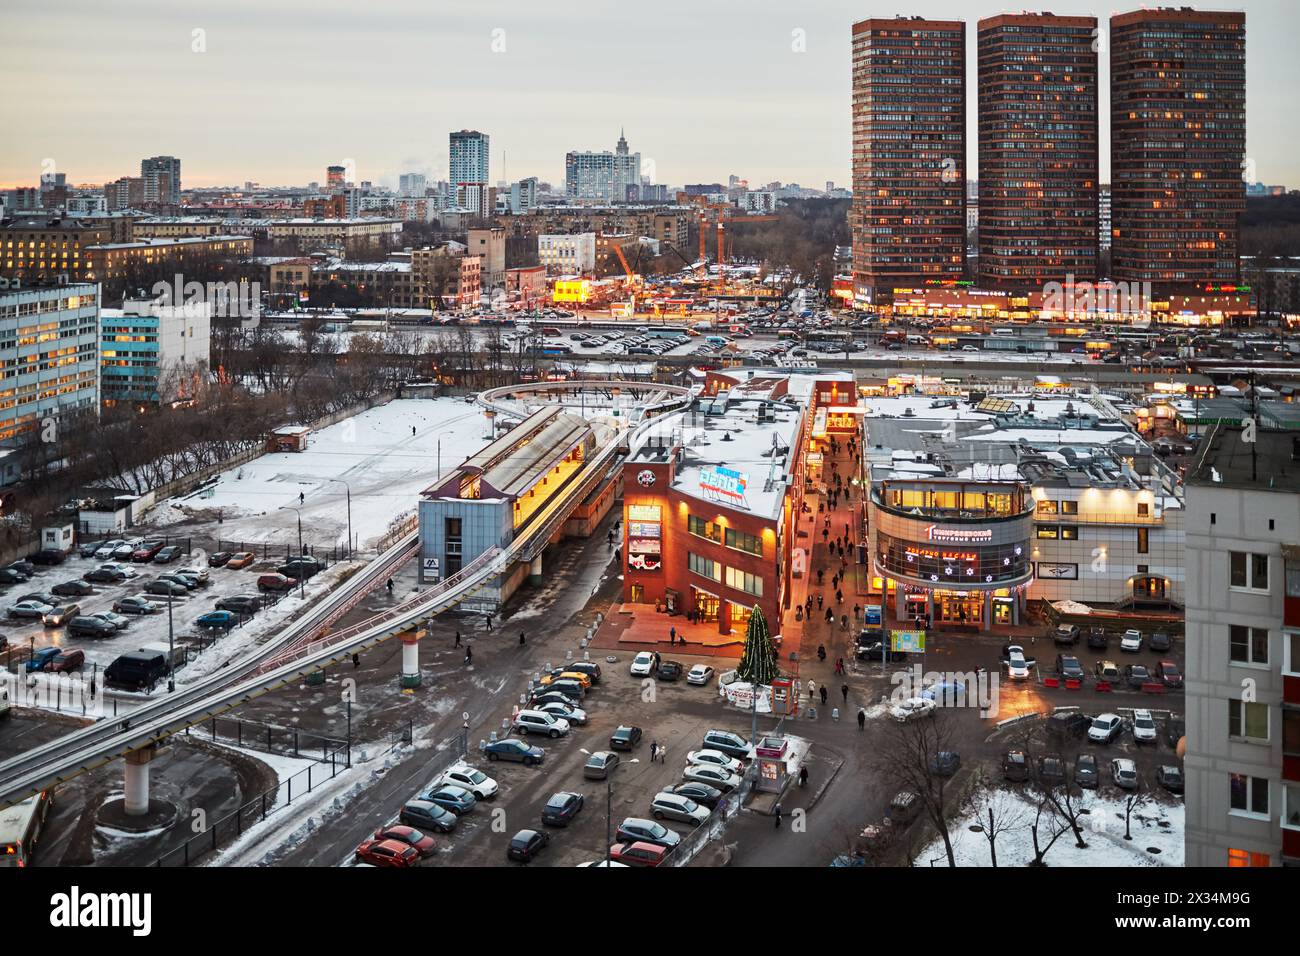 MOSKAU, RUSSLAND - 16. JAN 2015: Hochhäuser und Einkaufszentren an der Dmitrowskoje-Autobahn, einer der größten Autobahnen Moskaus Stockfoto